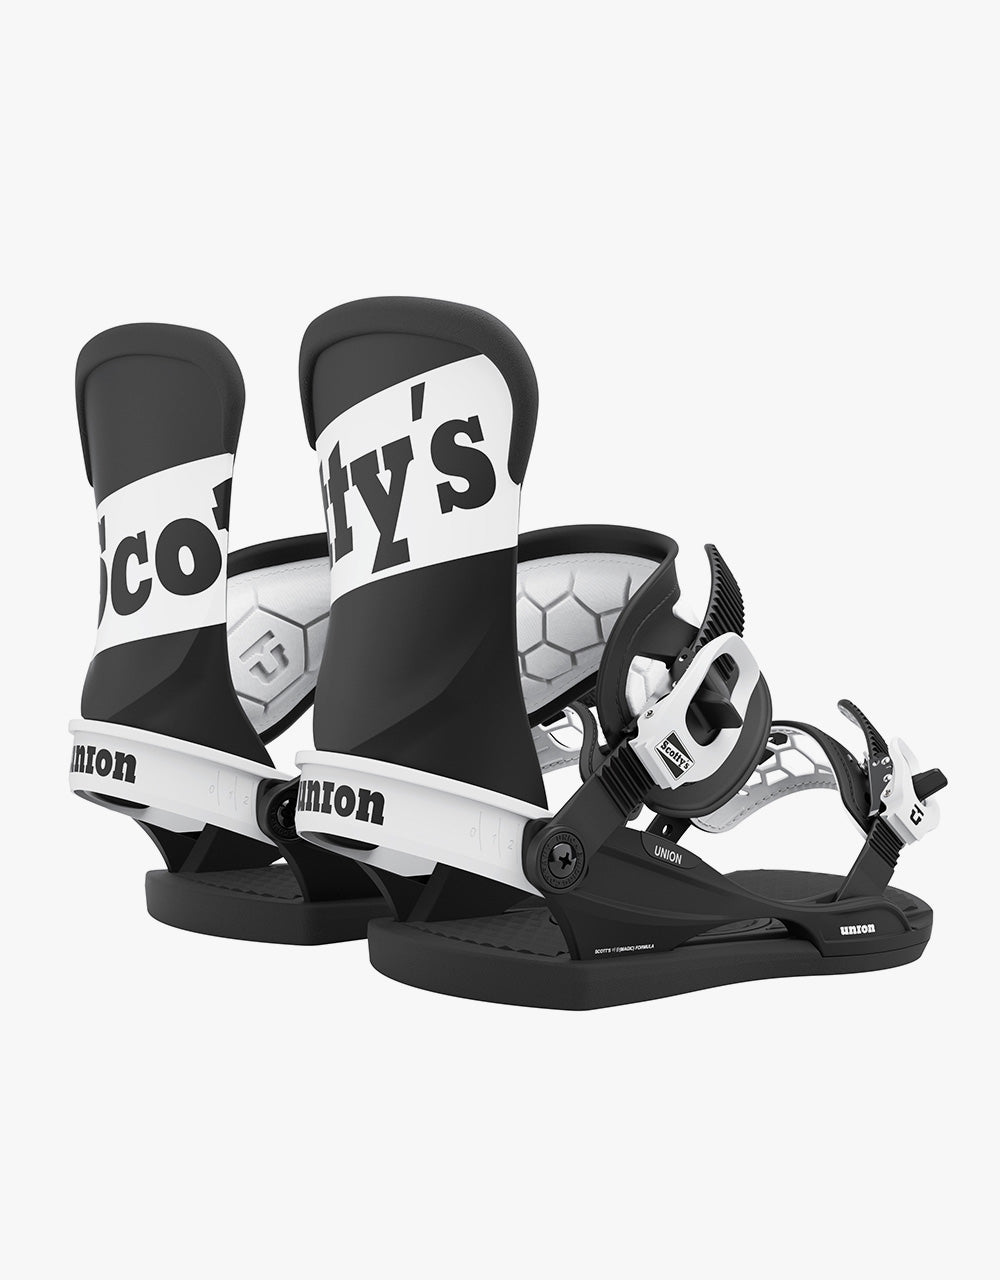 Union Stevens Pro 2021 Snowboard Bindings - Scotty's